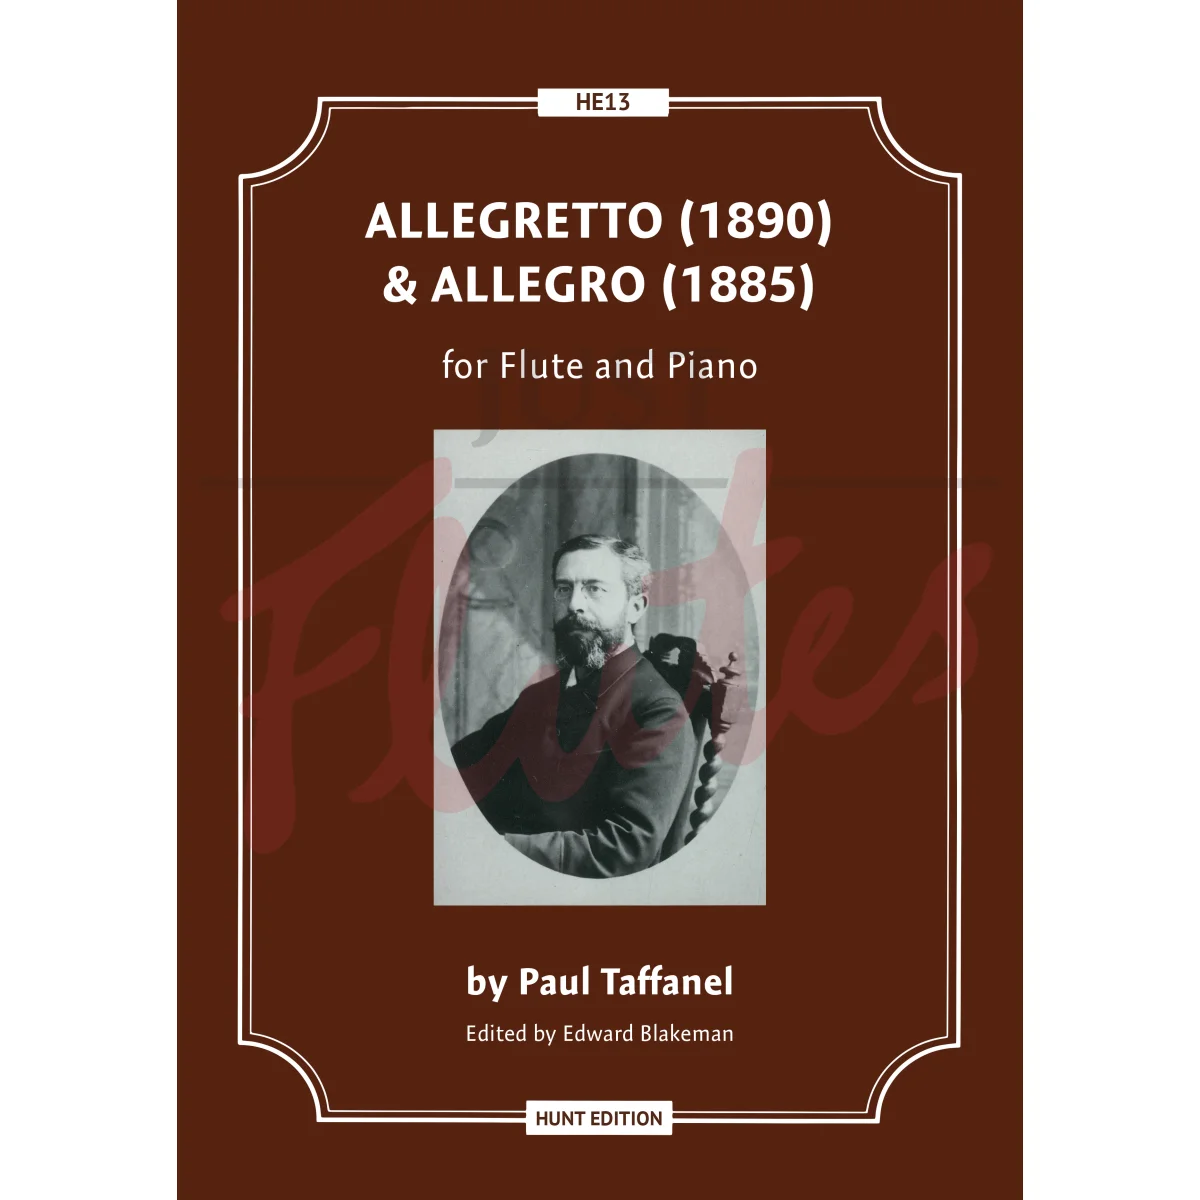 Allegretto and Allegro for Flute and Piano